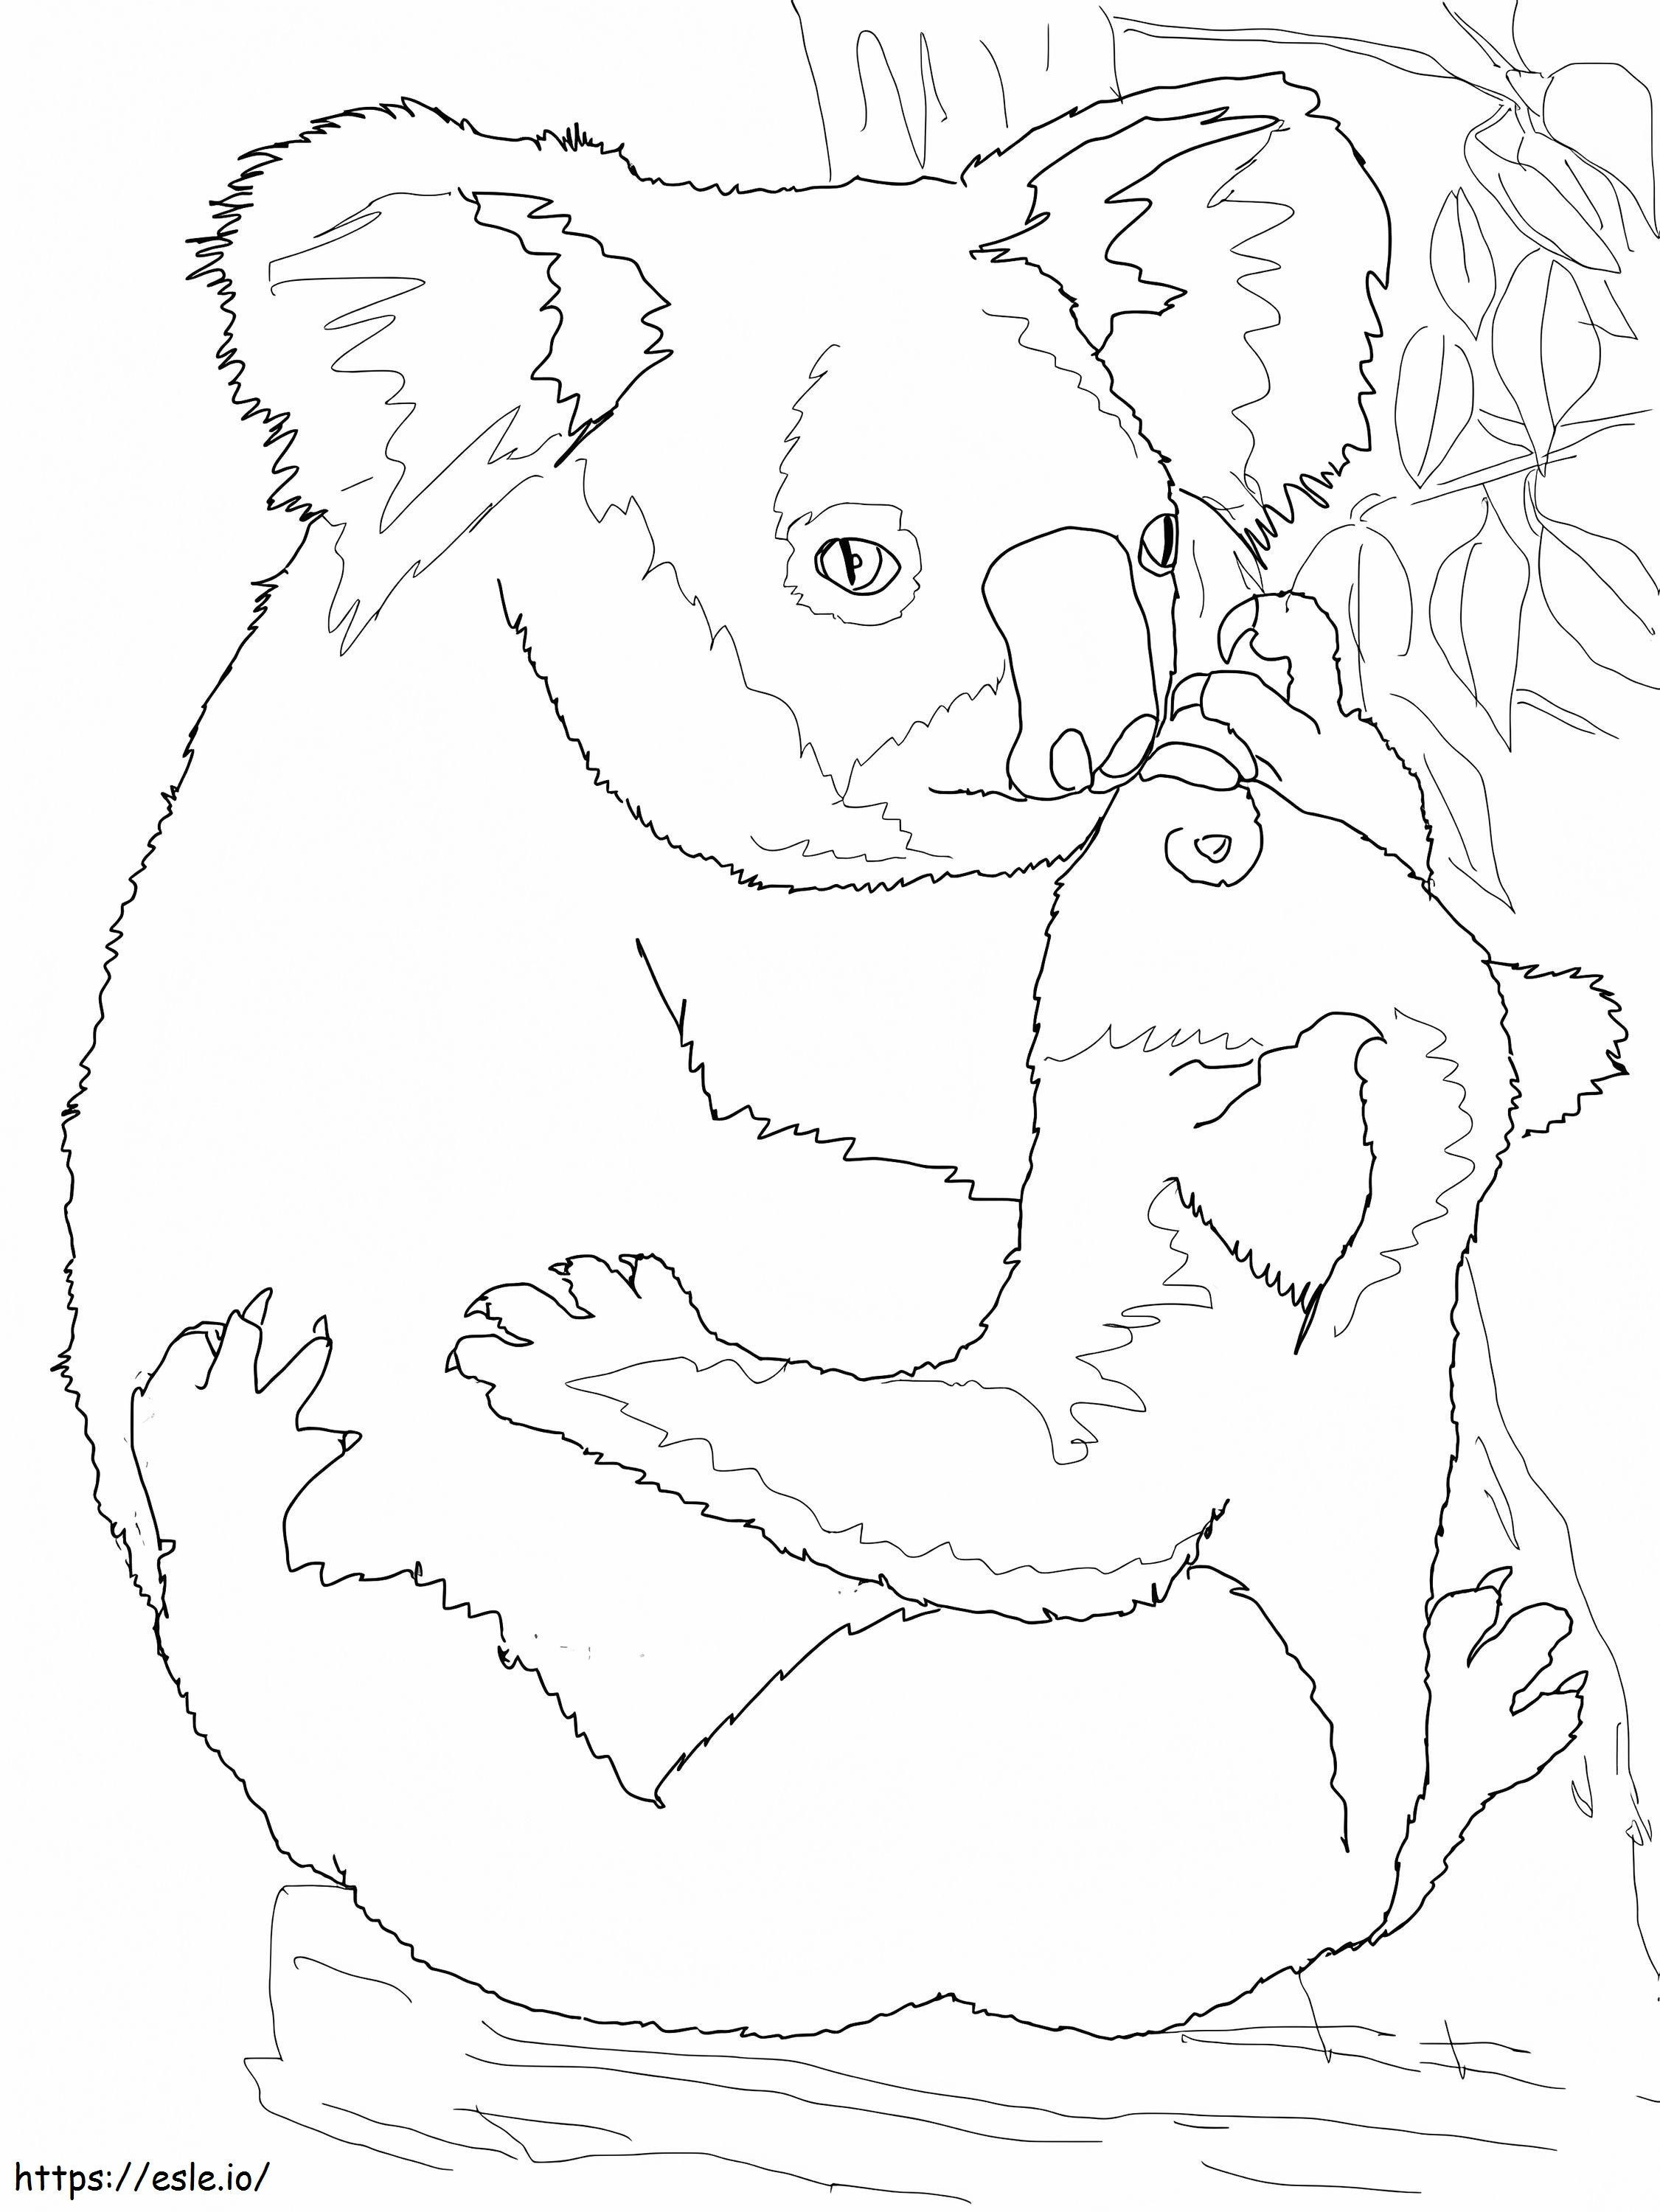 1594428939 Mama Koala își îmbrățișează copilul de colorat